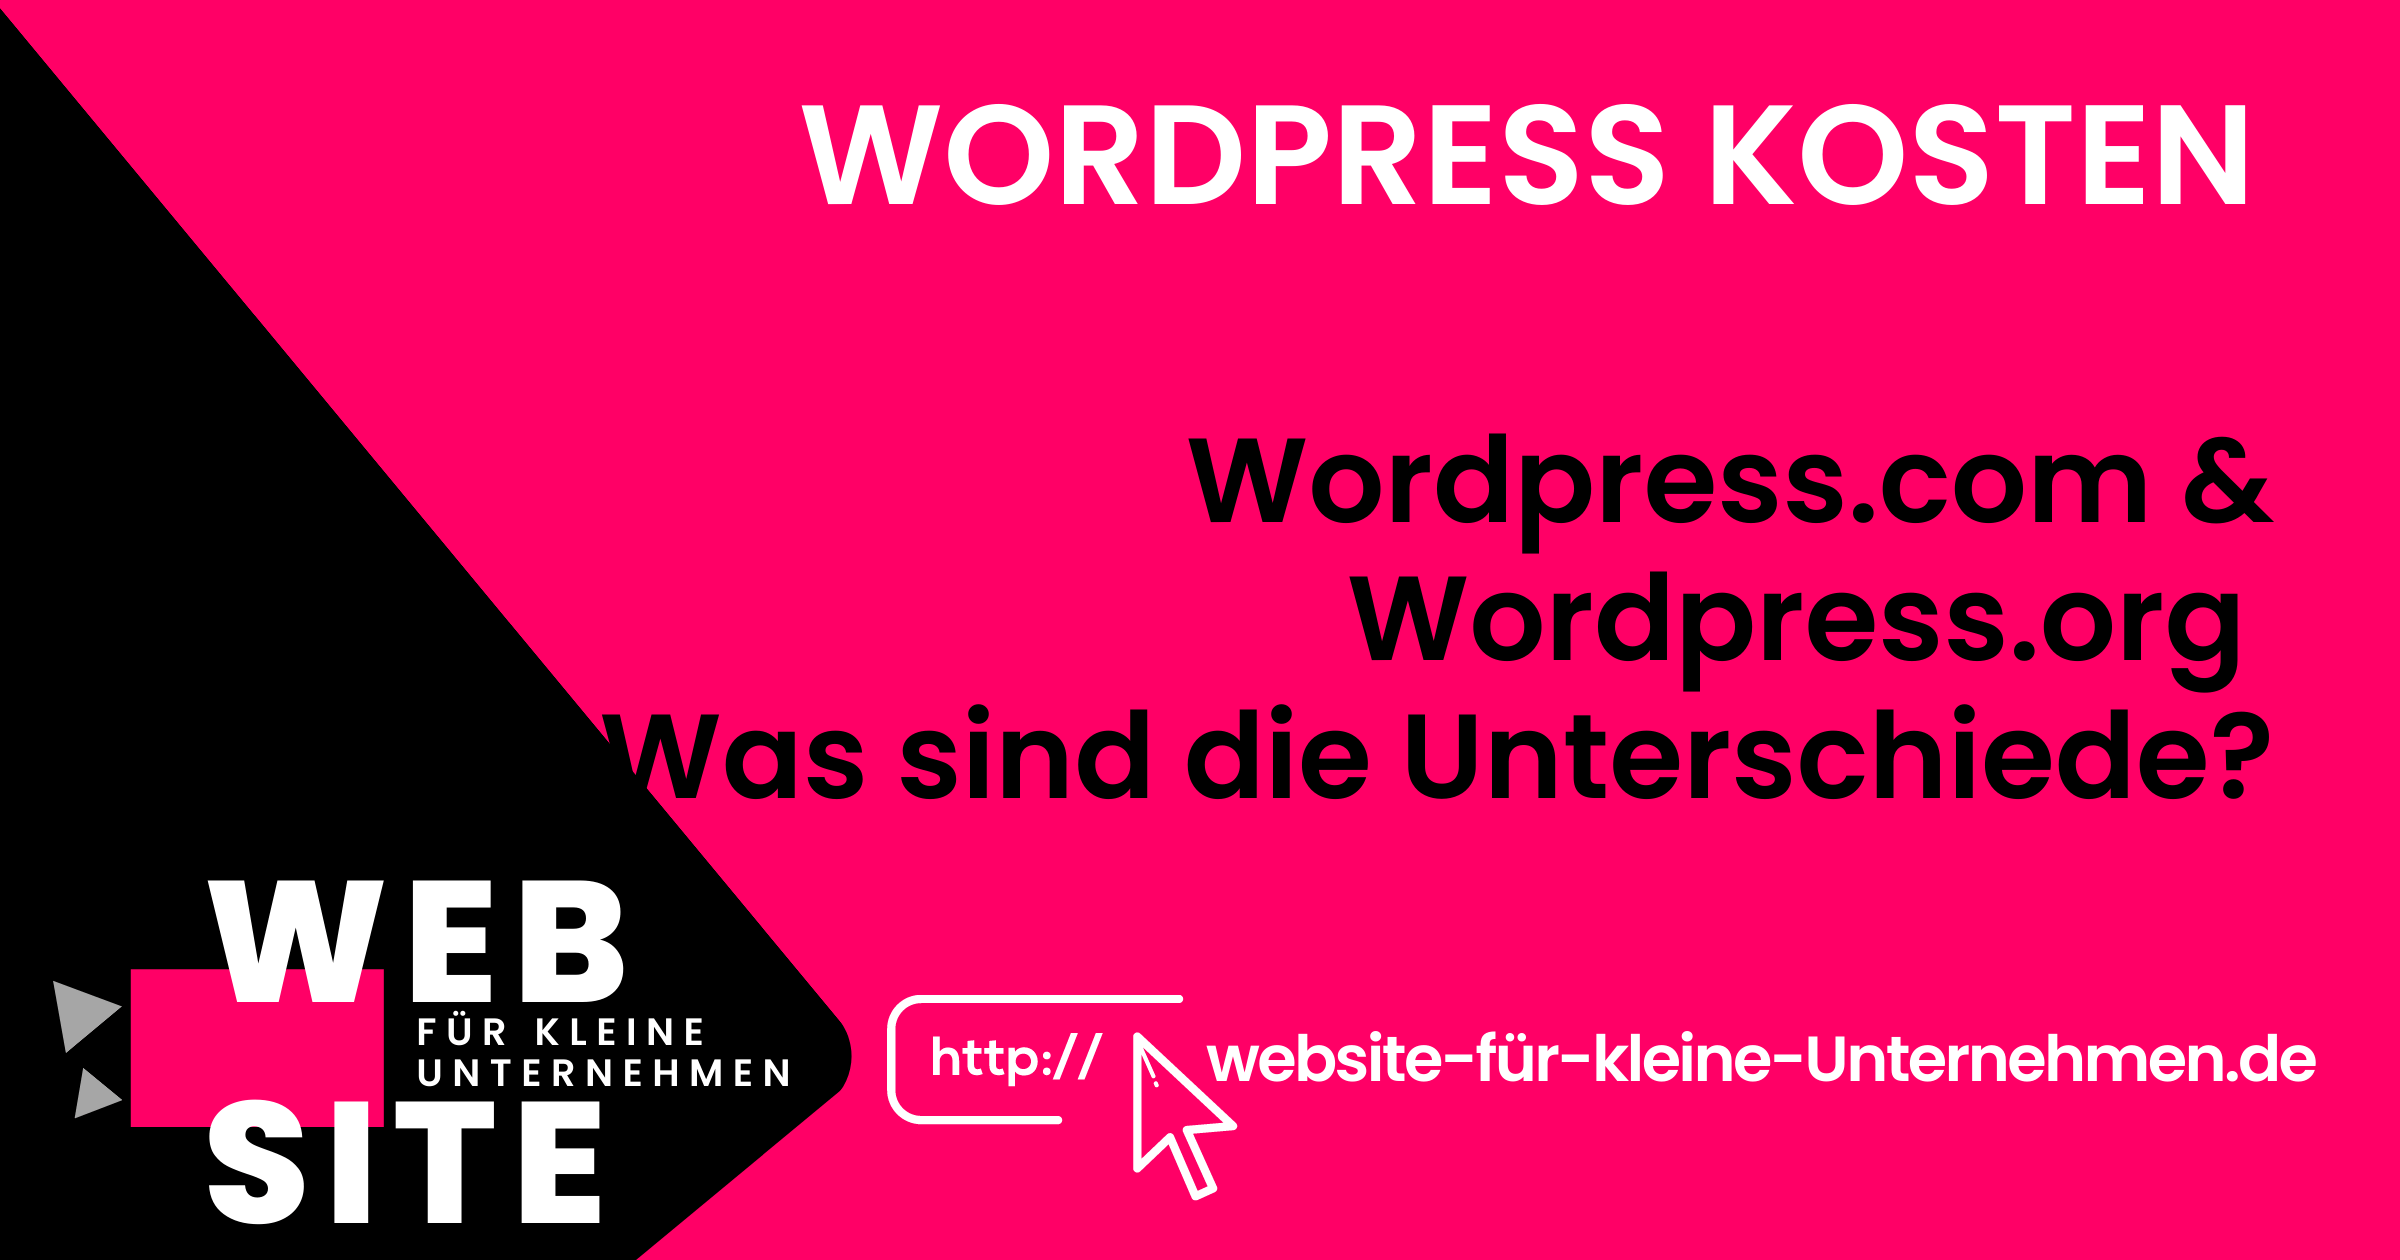 Wordpress Kosten - Website für kleine Unternehmen - Unterschied wordpress.com und wordpress.org